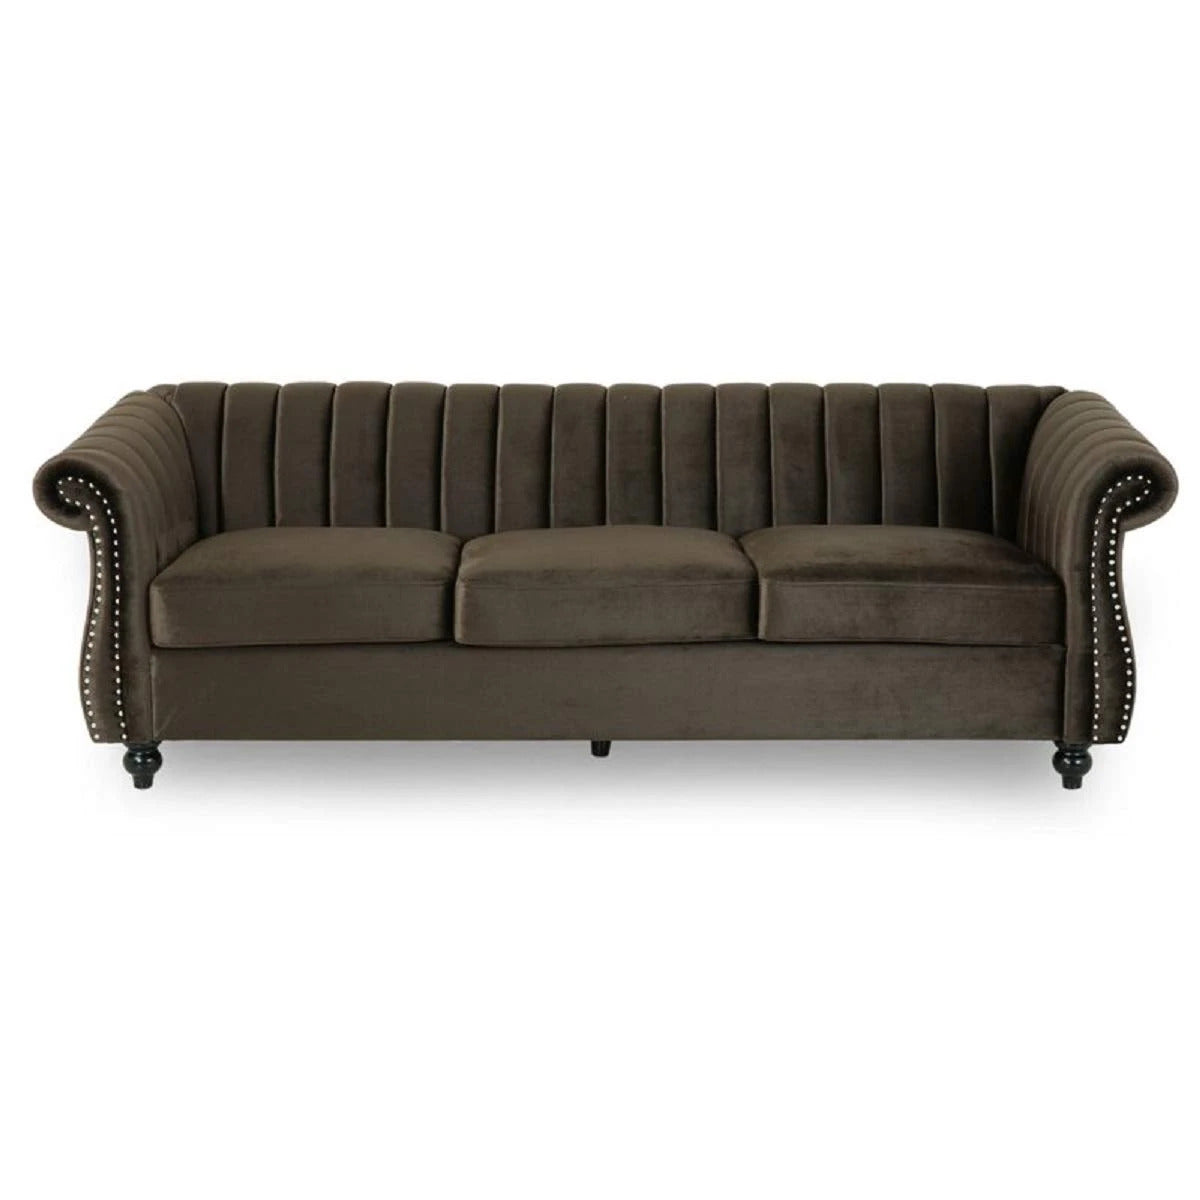 Designer Sofa Set:- 3 Seater Velvet Fabric Luxury Furniture Sofa Set 